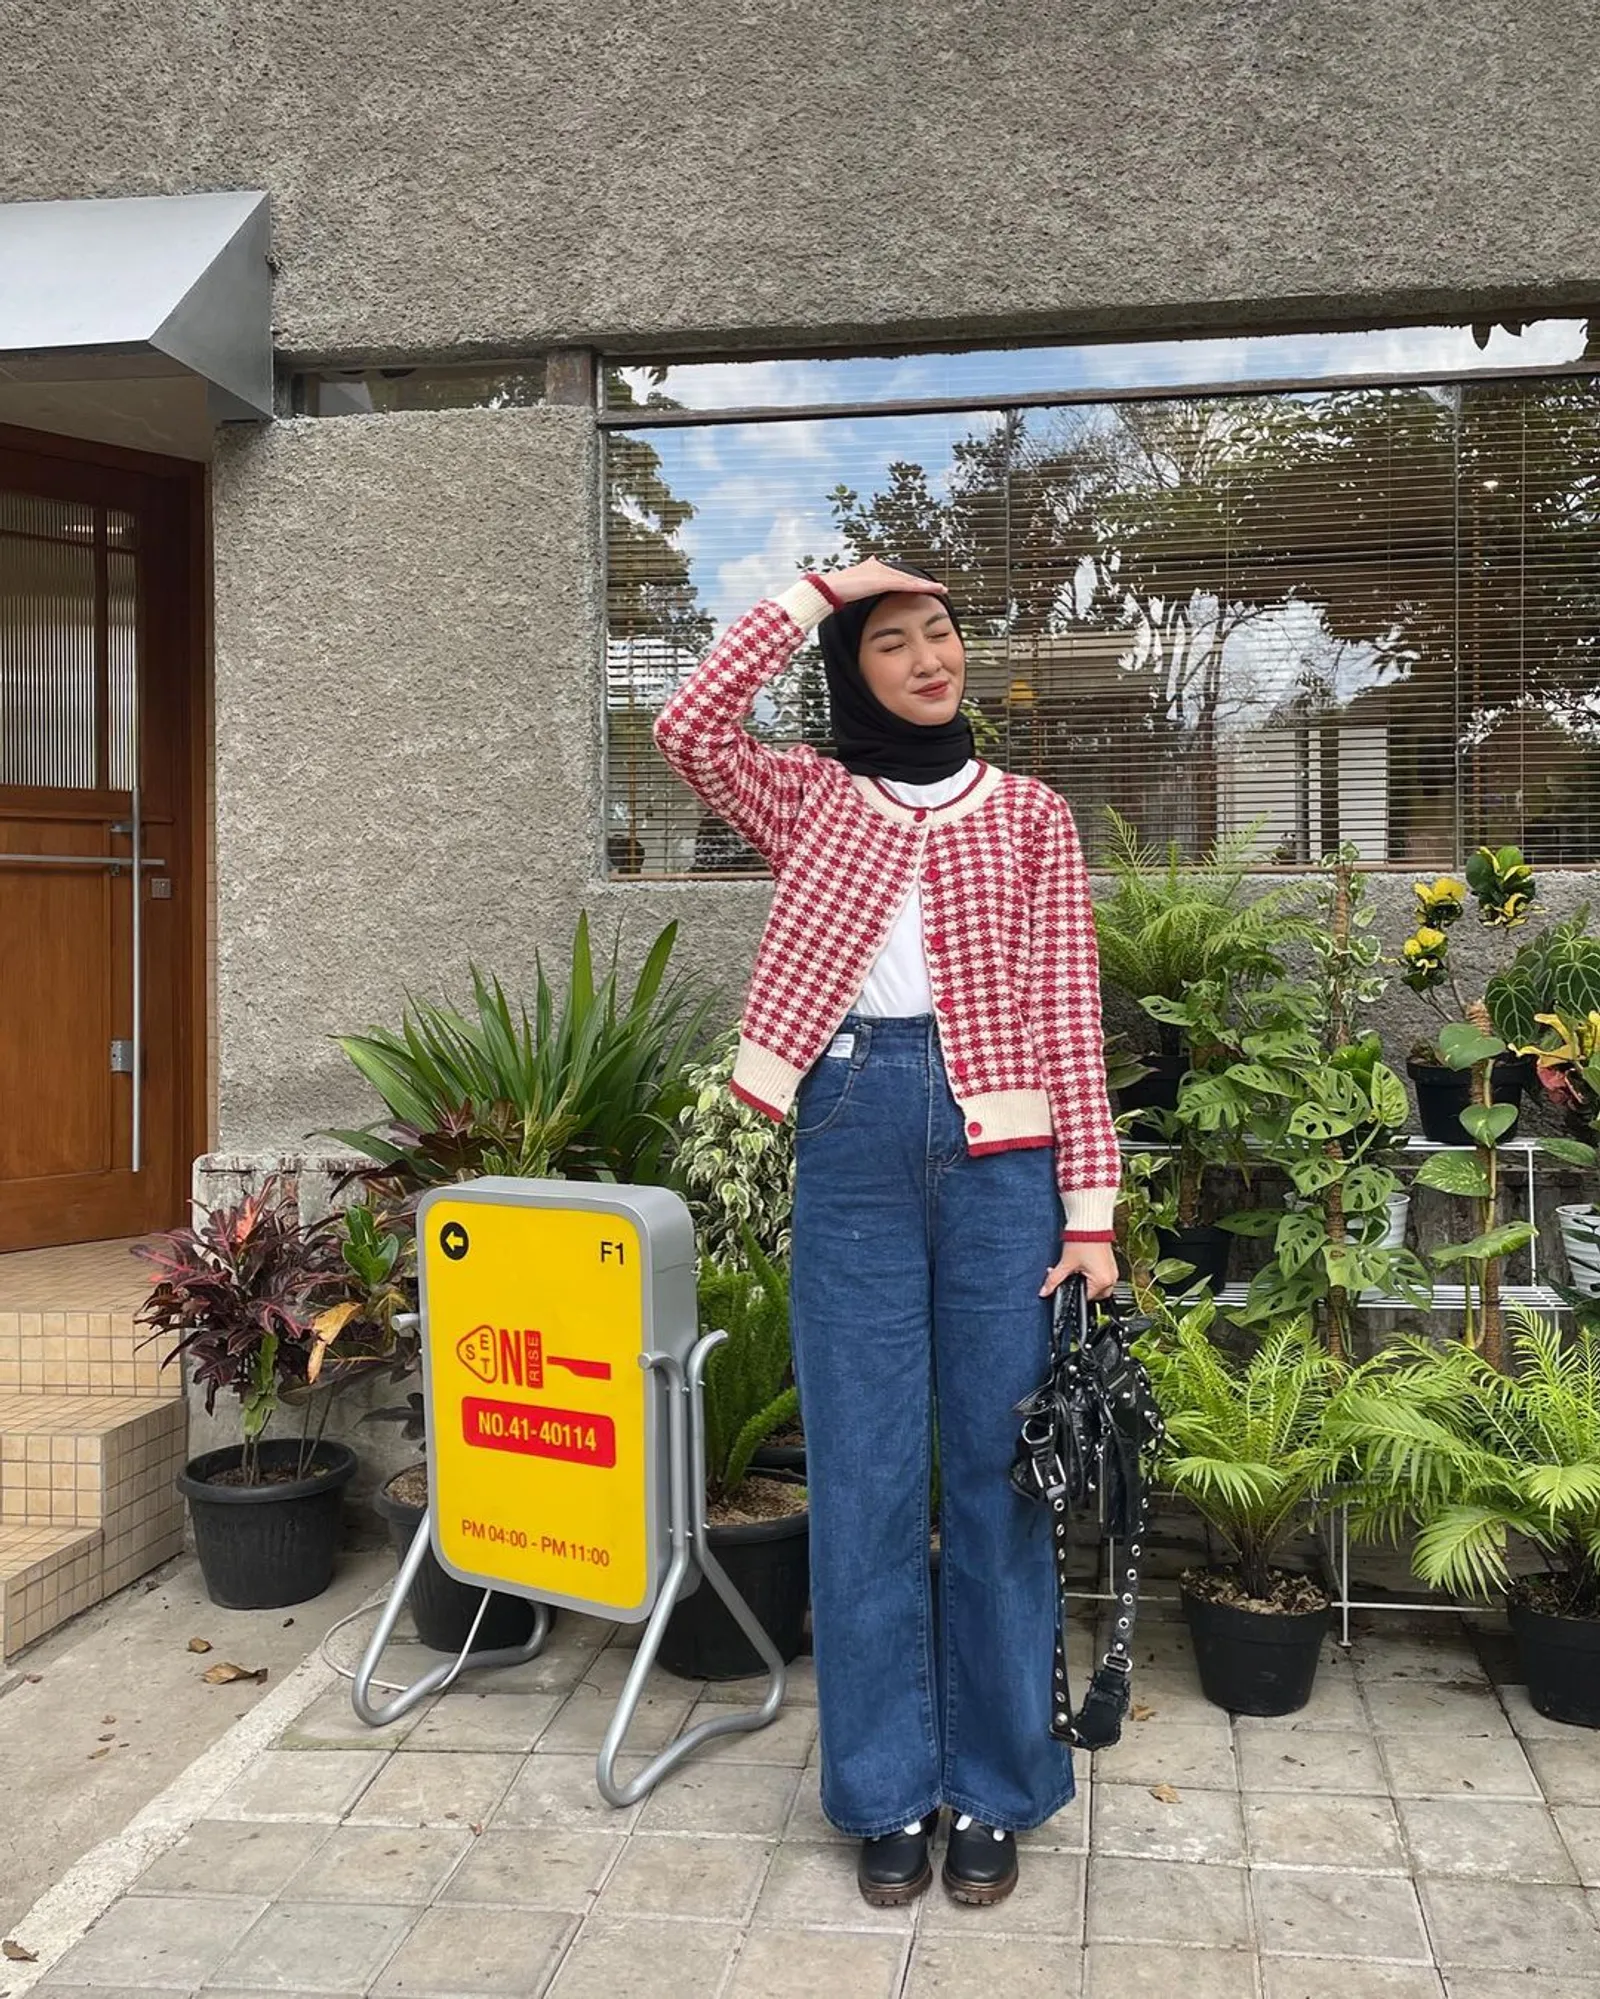 Ide Outfit Hijab Modis dengan Kombinasi Cardigan dan Jeans